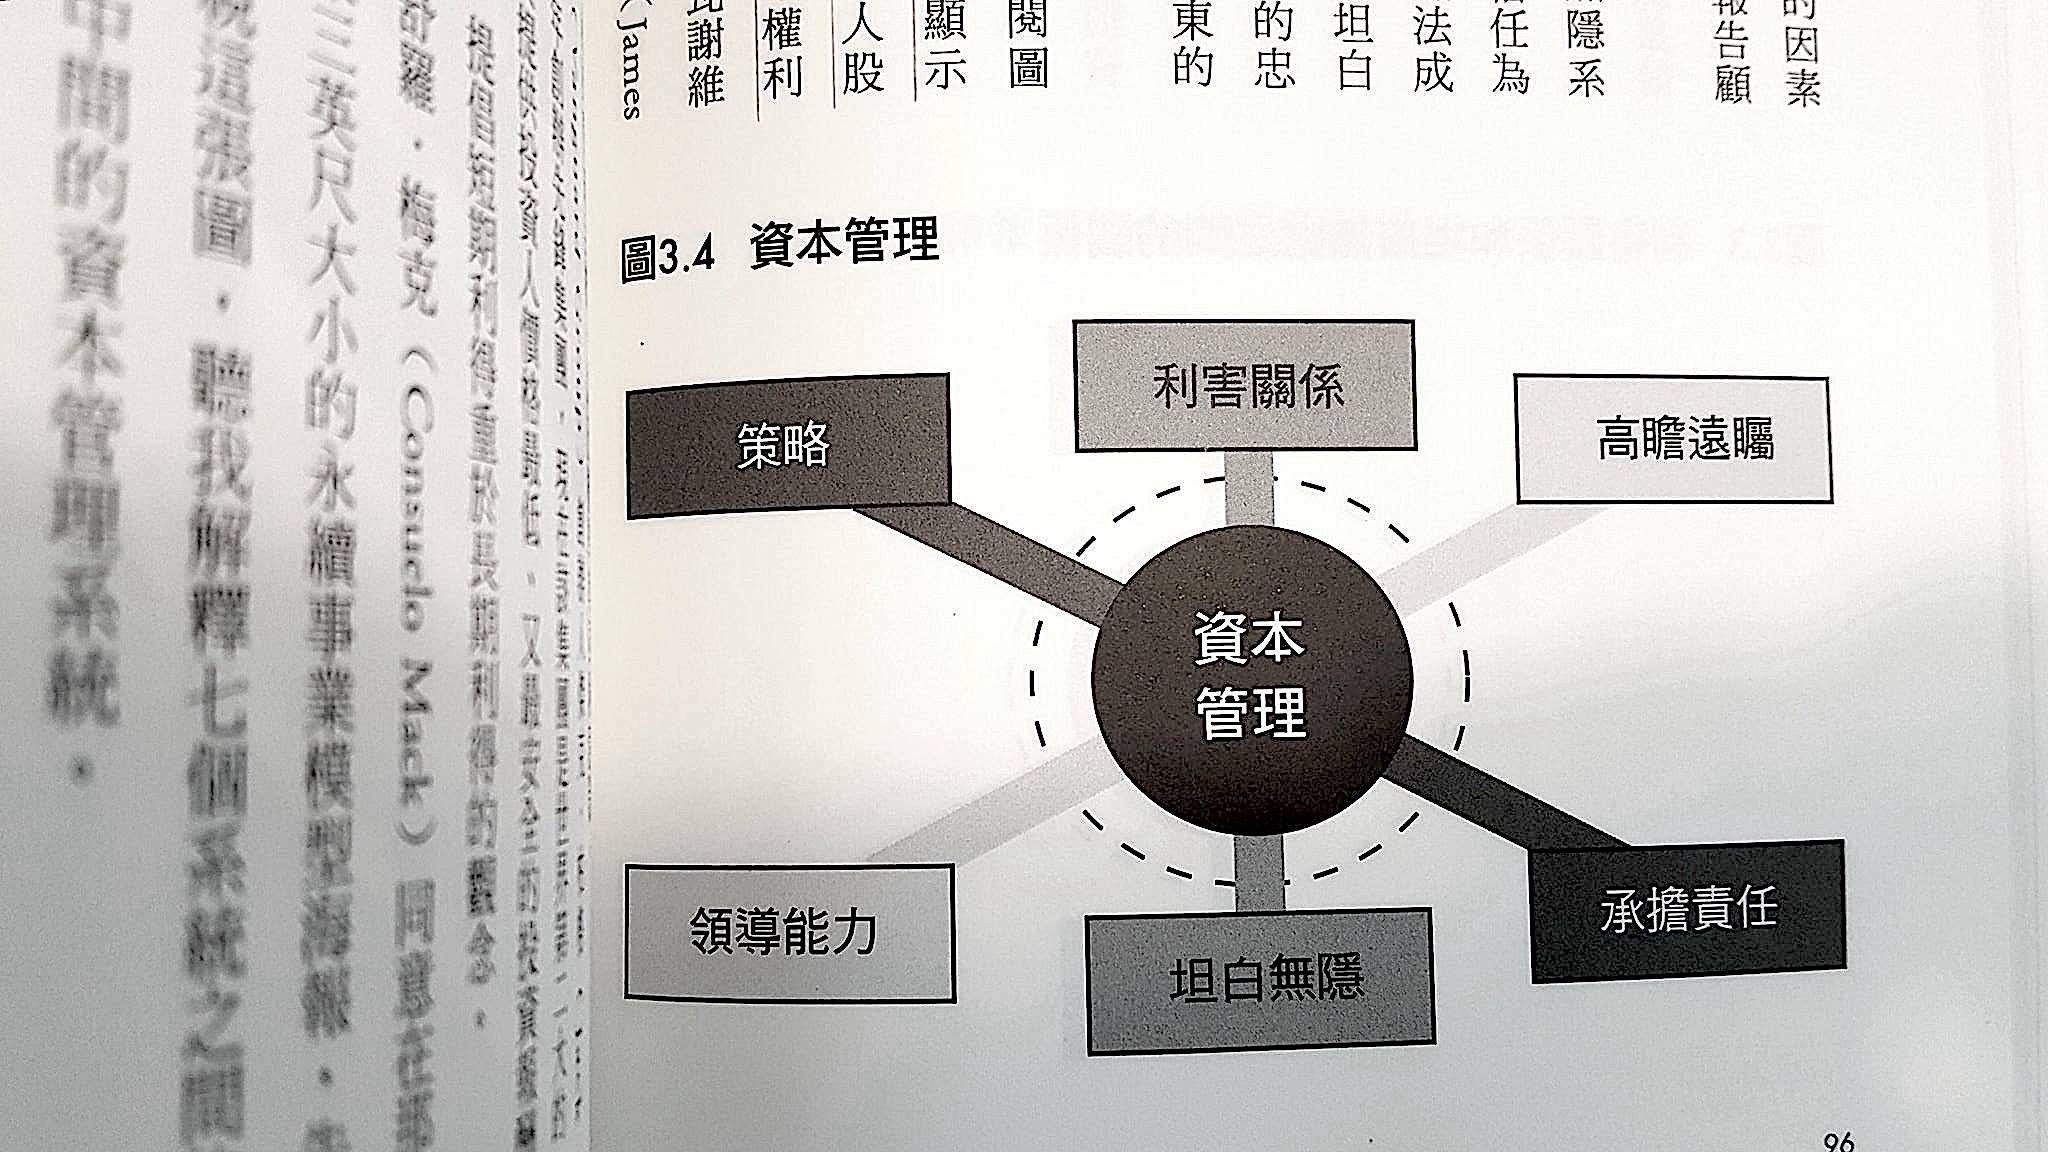 永續事業模型 (model of a sustainable business)